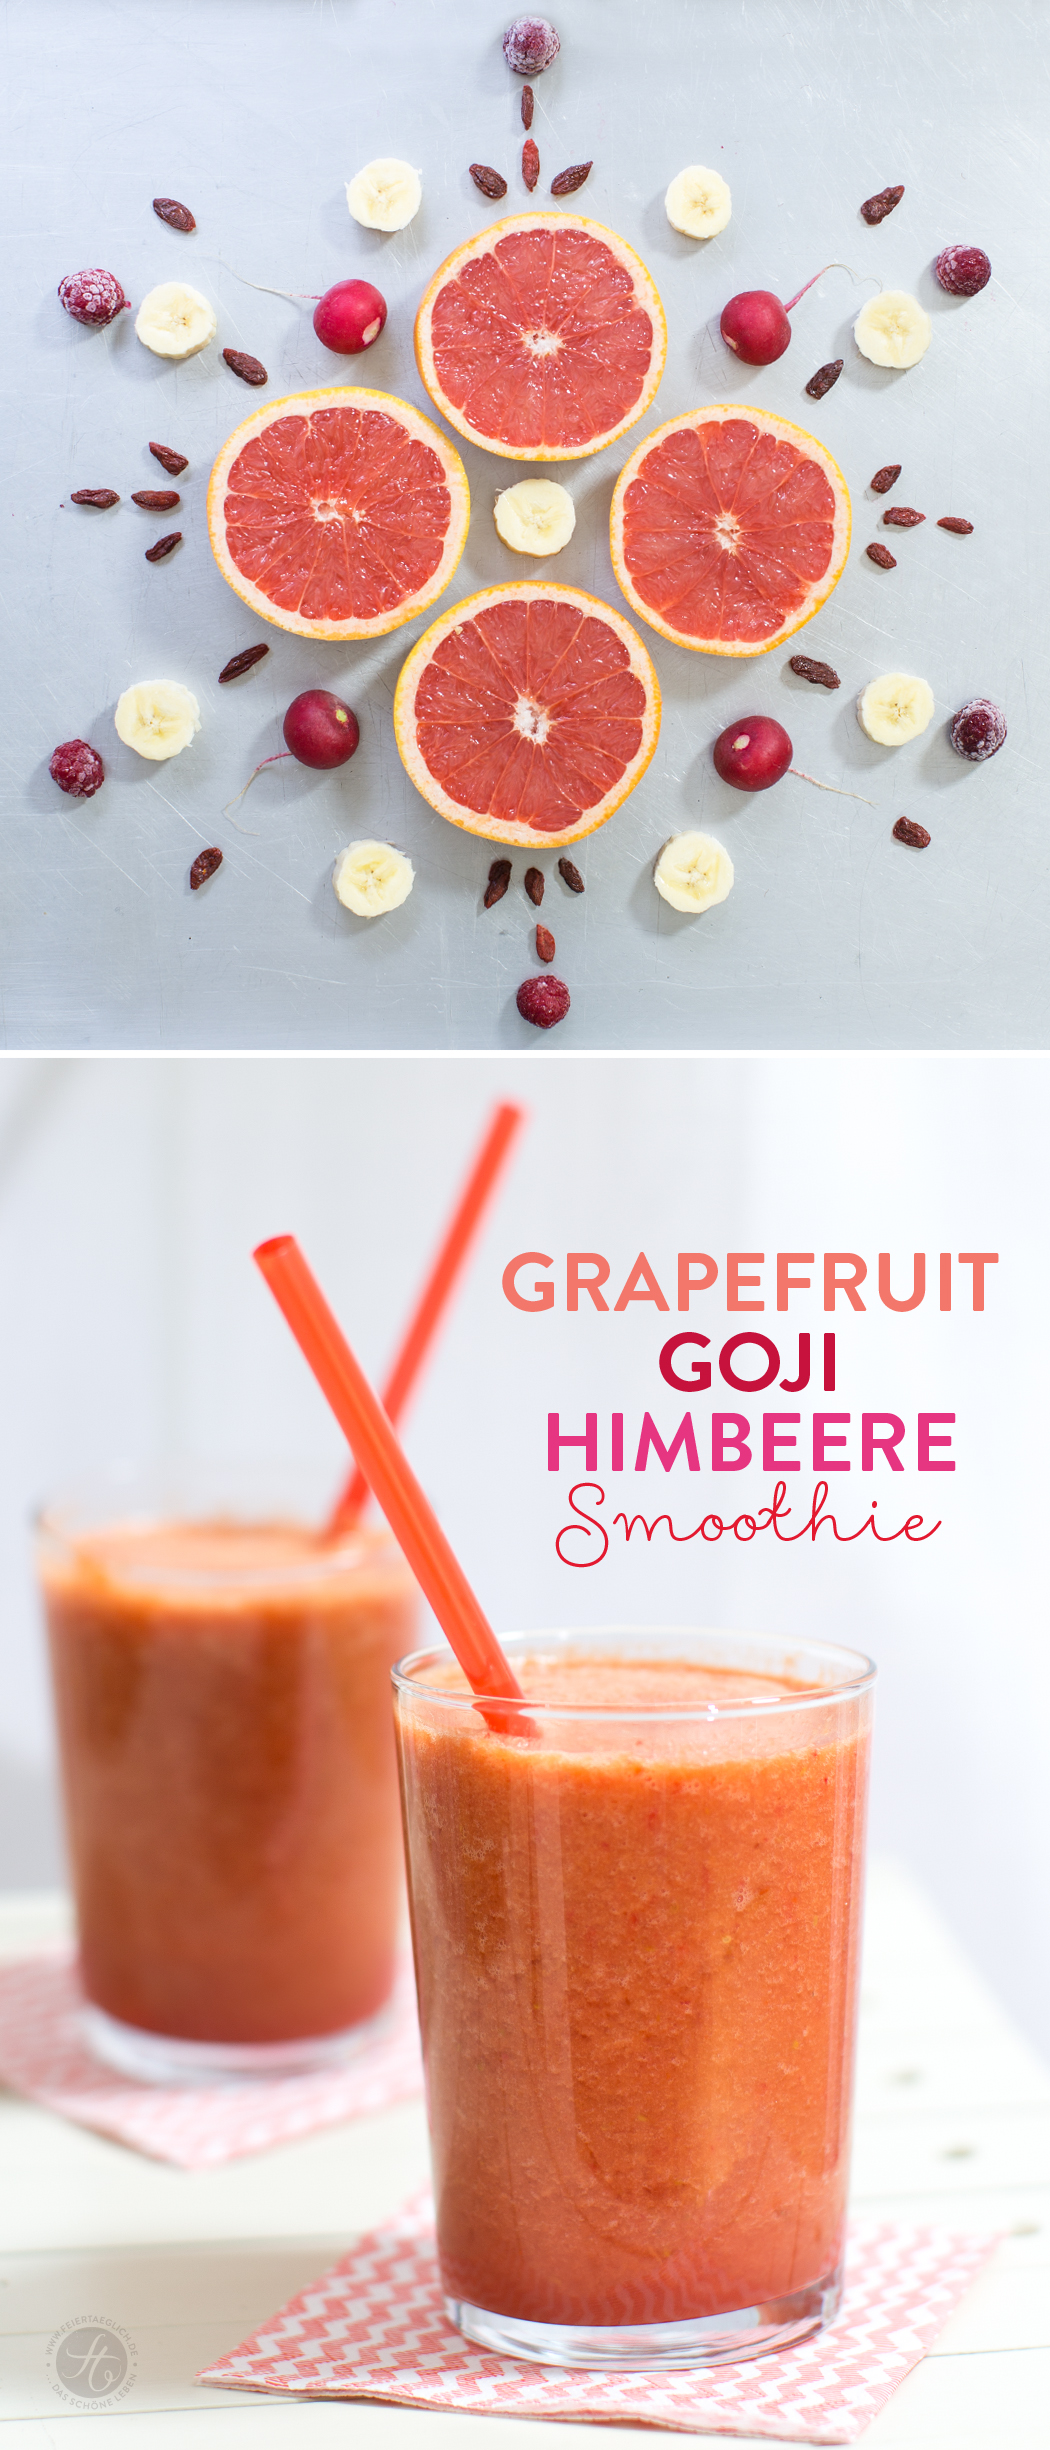 Grapefruit-Goji-Himbeere Smoothie – Lieblingsfarbe zum Trinken, Smoothie-Montag auf feiertäglich.de